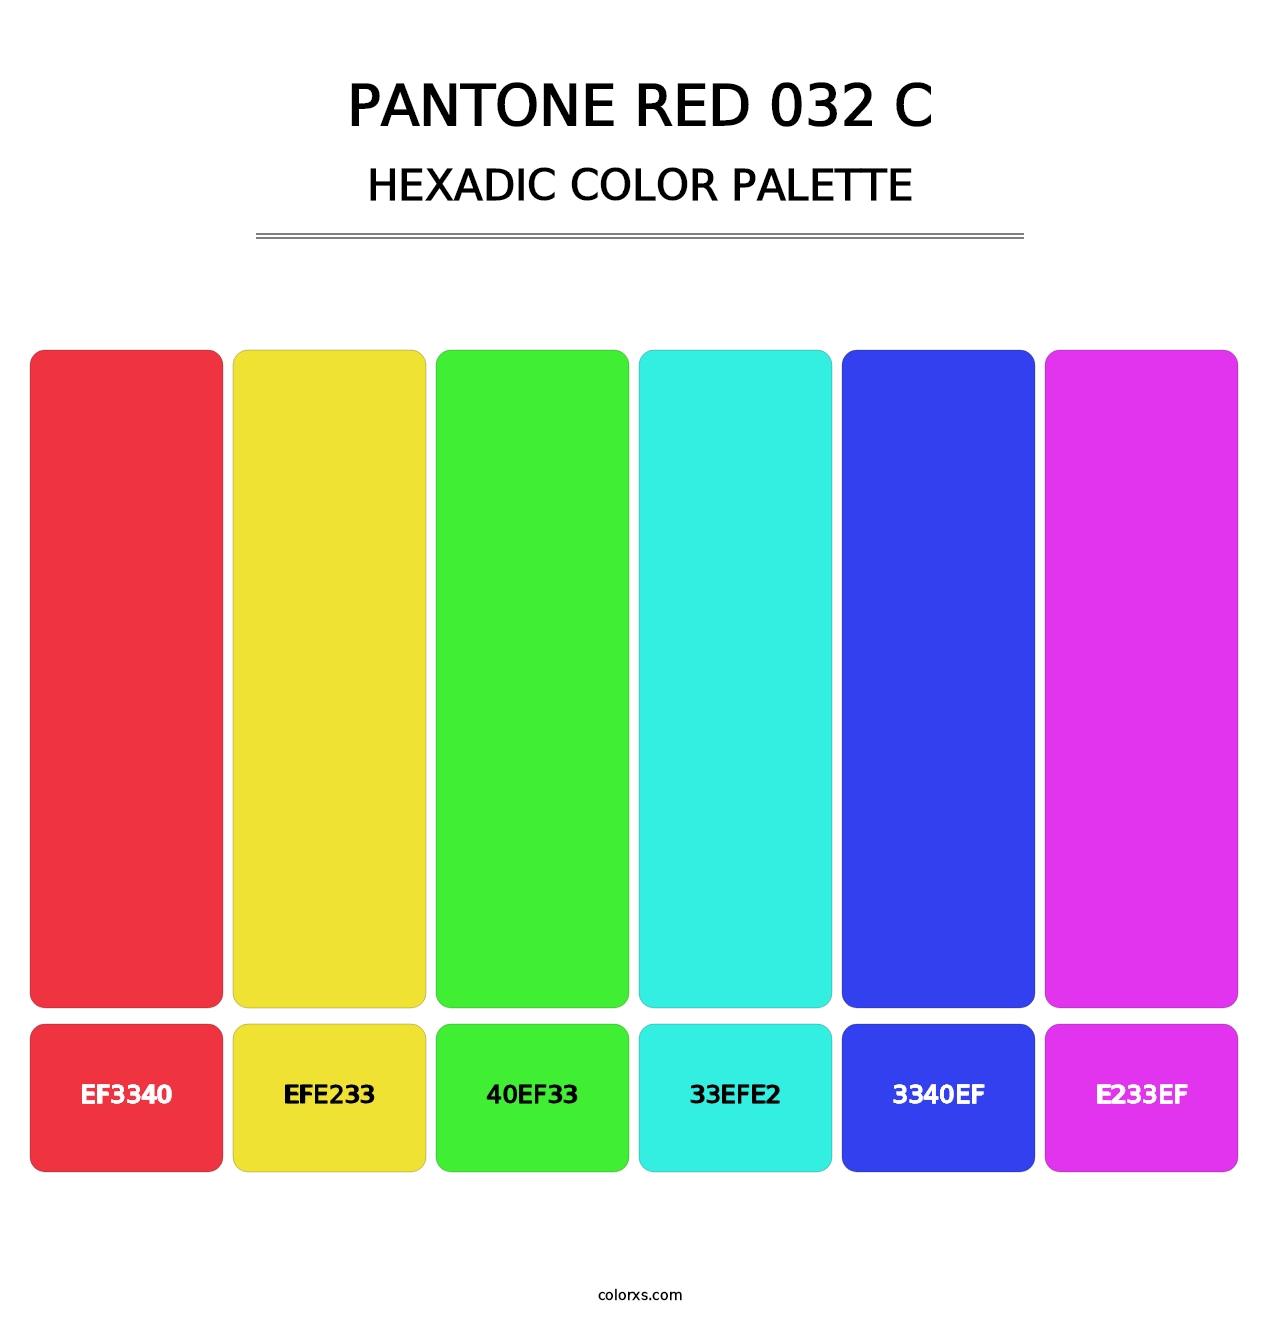 PANTONE Red 032 C - Hexadic Color Palette